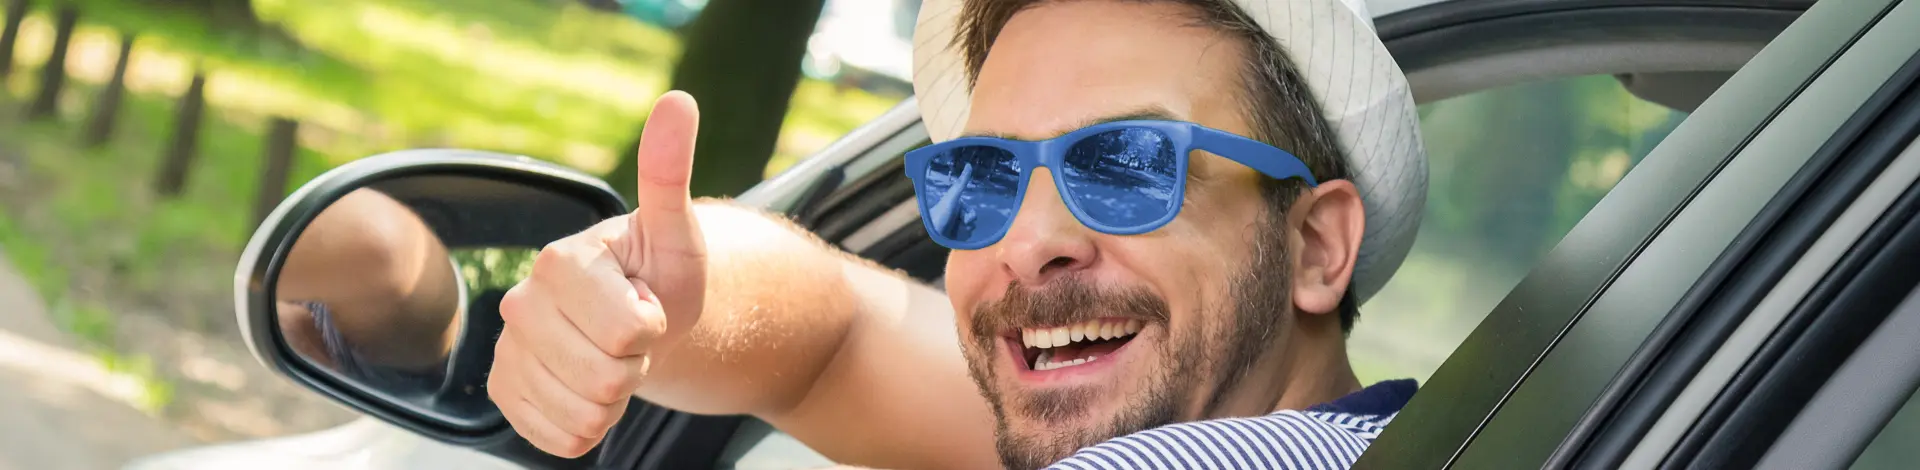 mann-im-auto-mit-sonnenbrille-und-zeigt-daumen-nach-oben